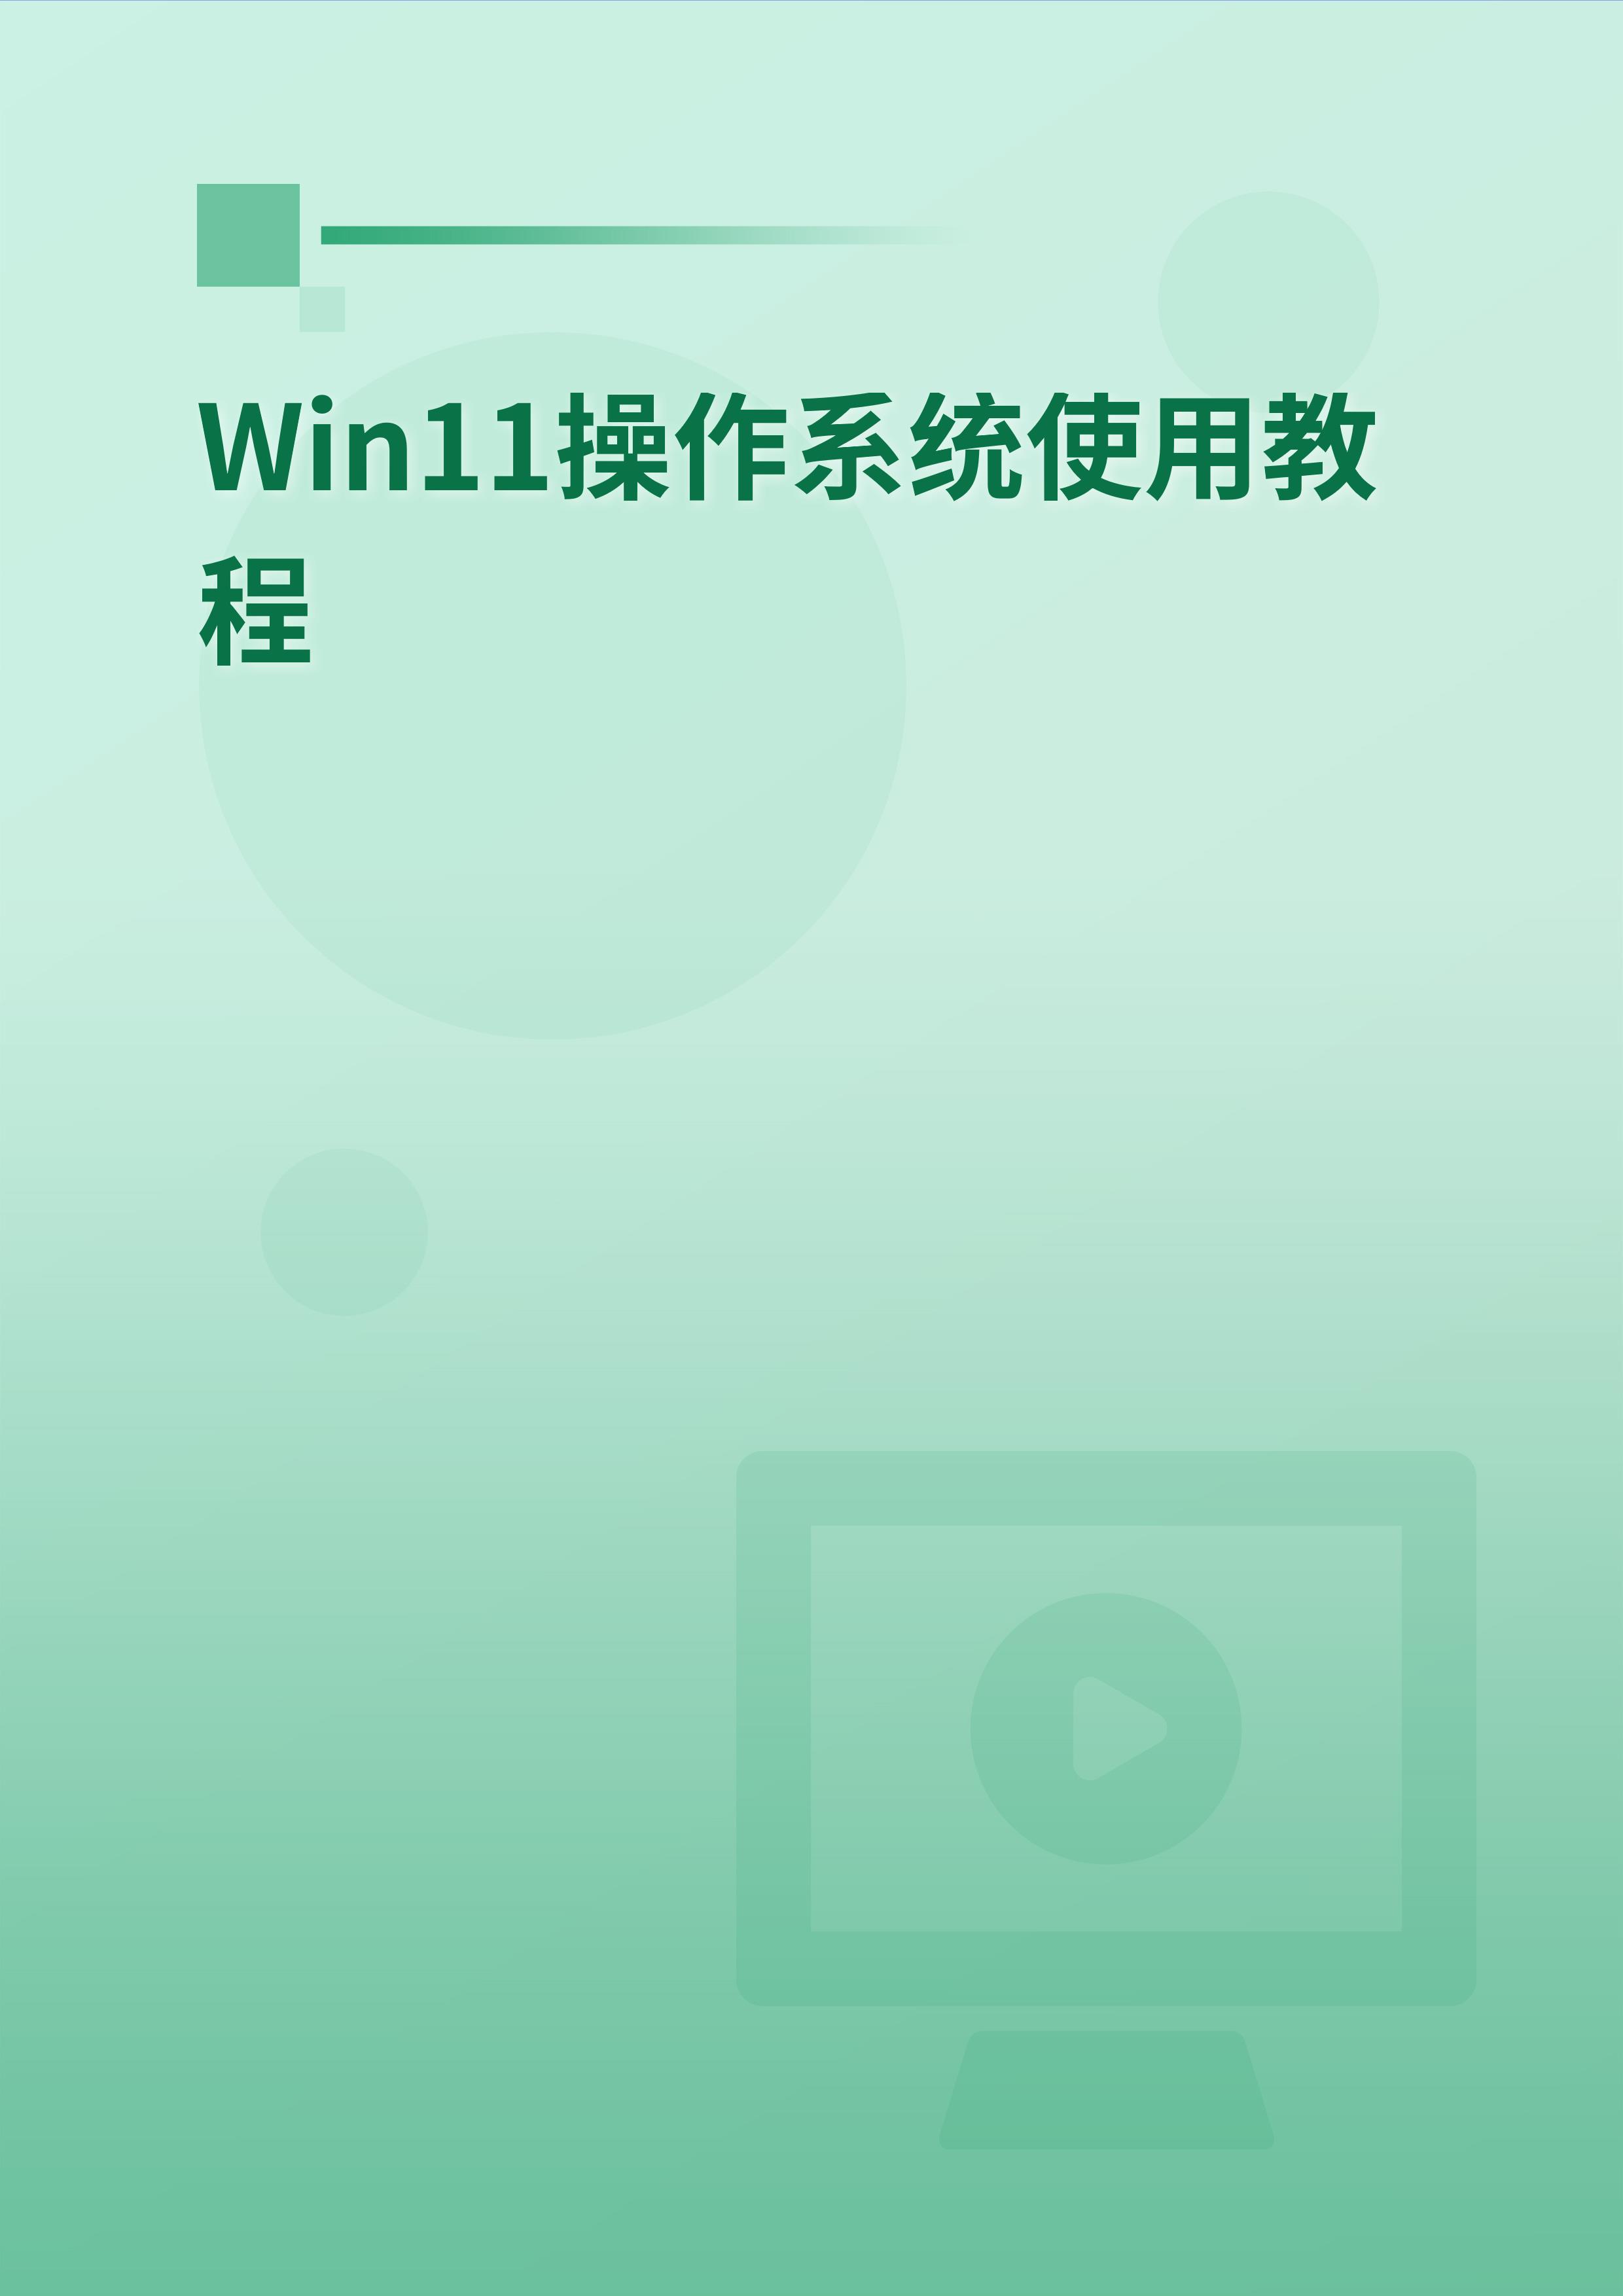 Win11操作系统使用教程